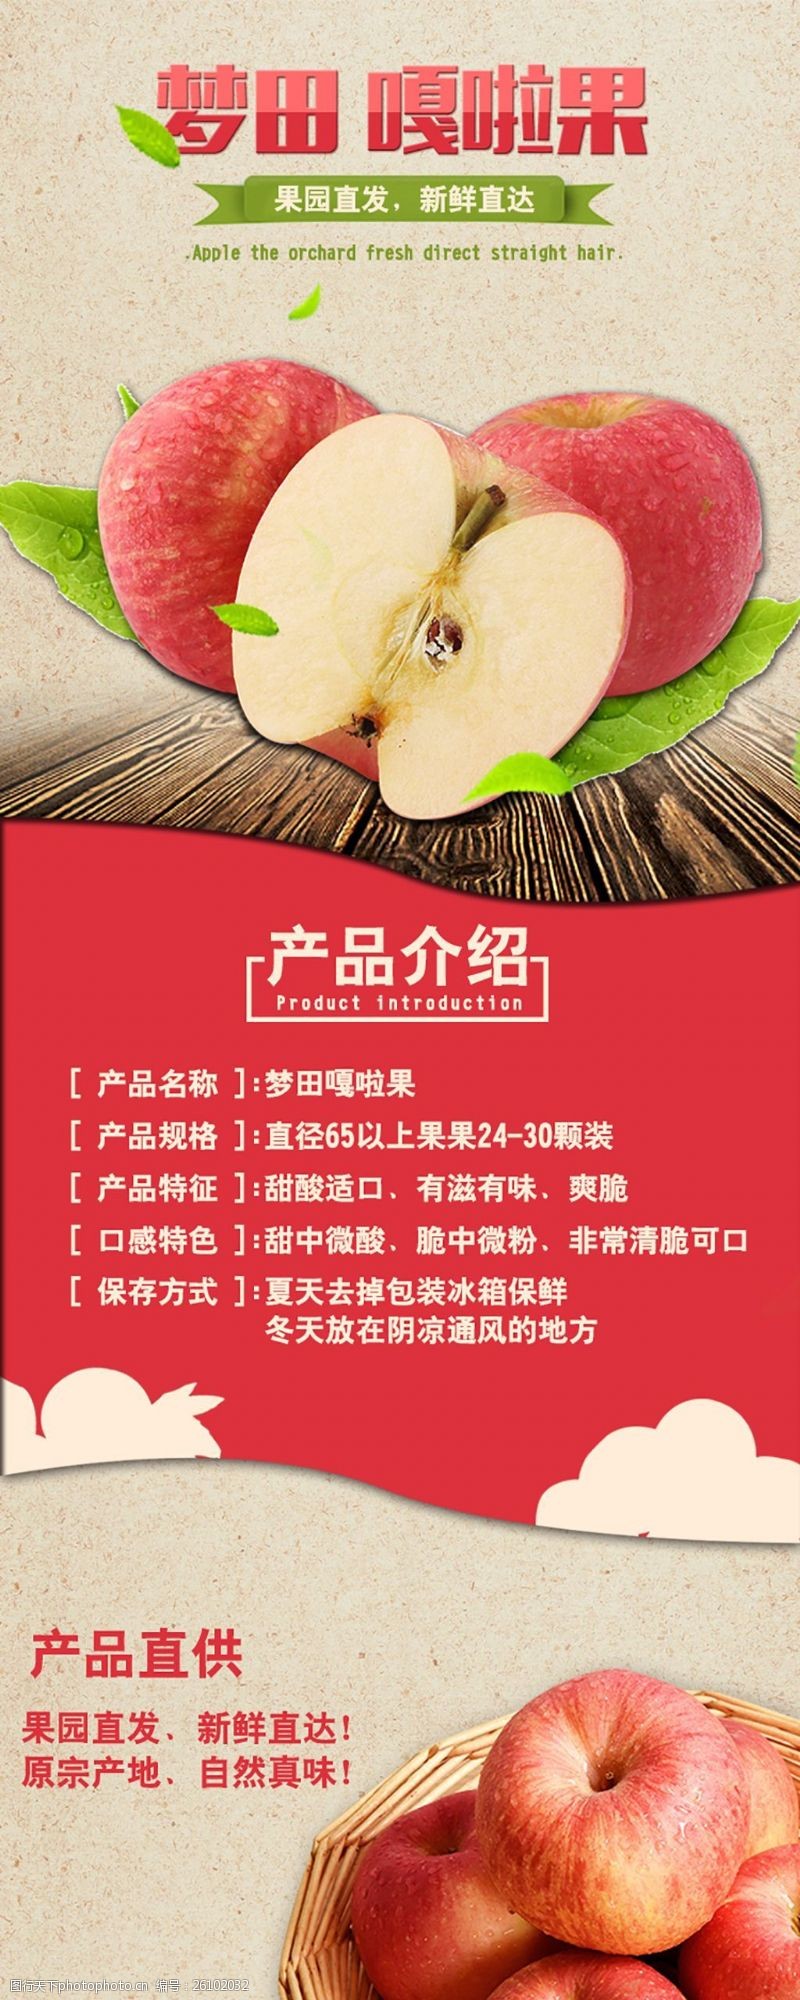 红苹果苹果详情页